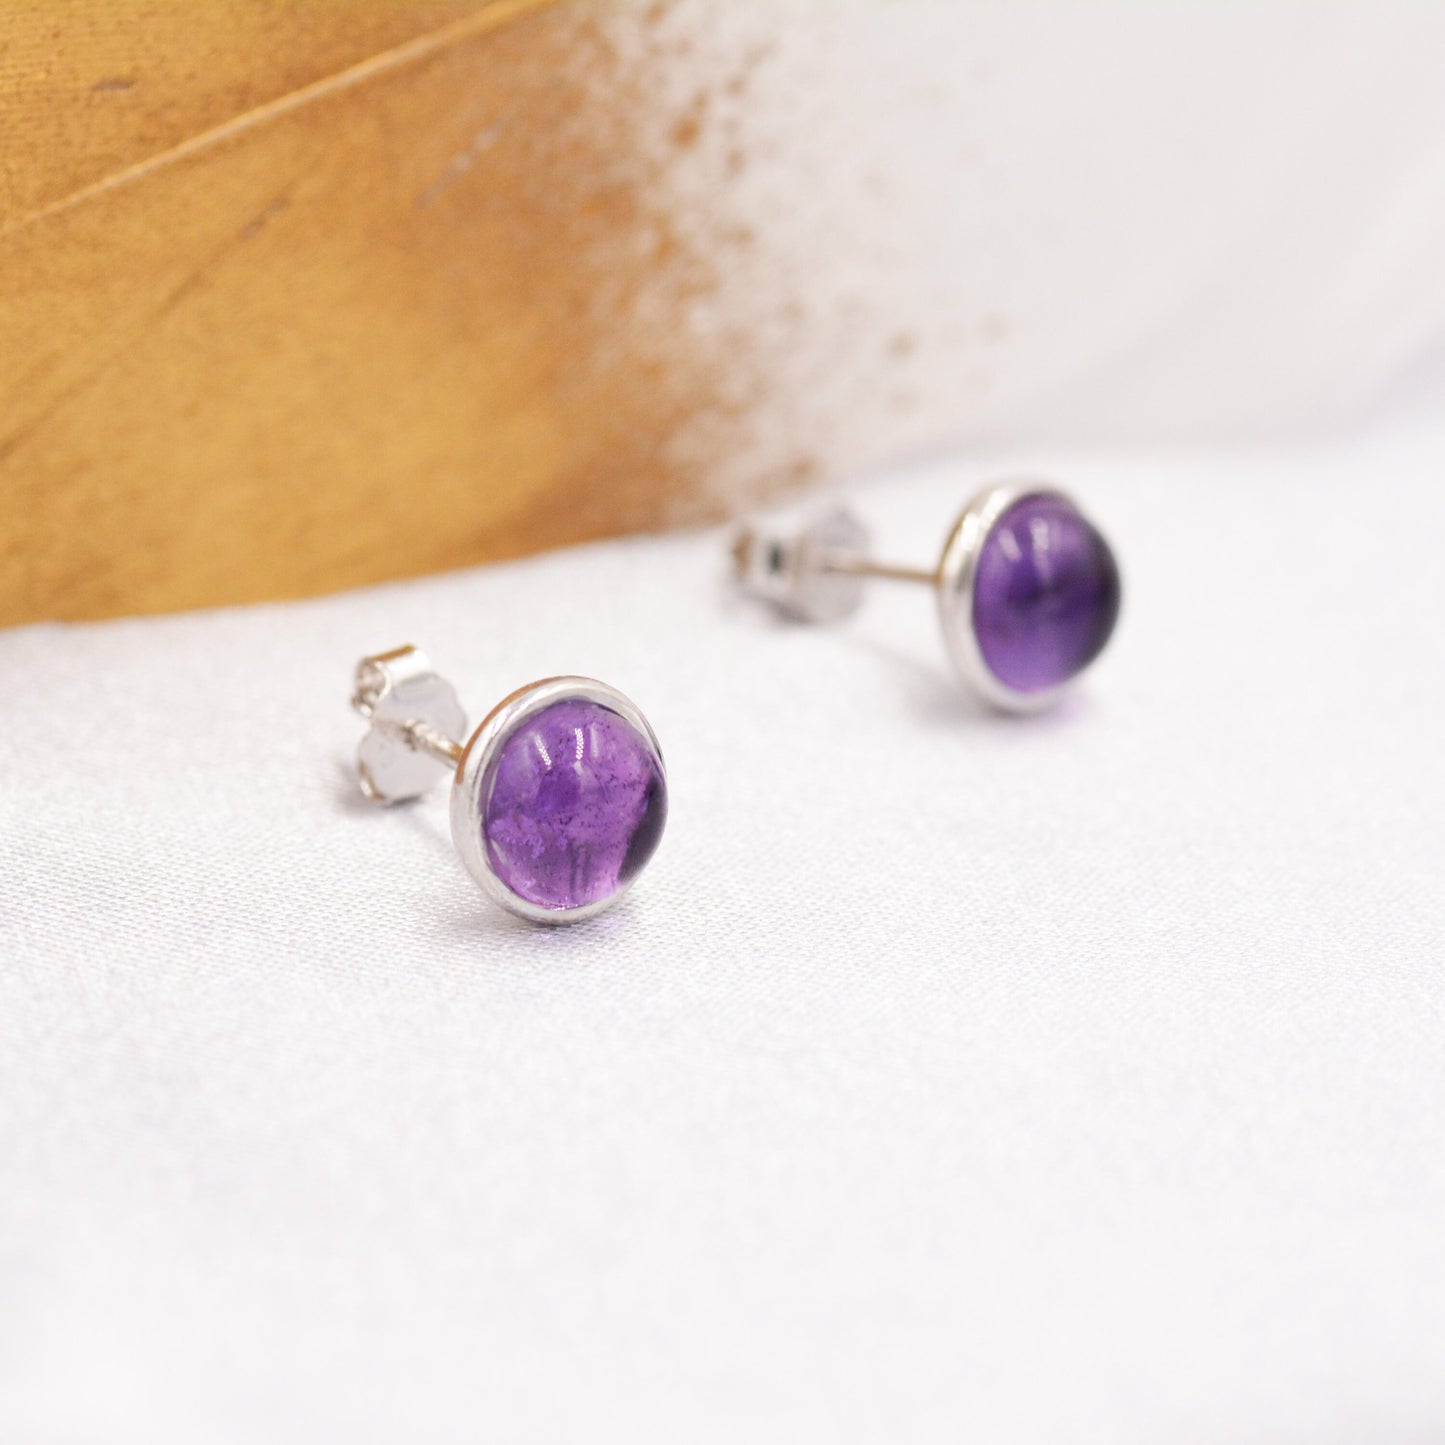 Natural Amethyst Stud Earrings in Sterling Silver - Genuine  Purple Amethyst Crystal Stud Earrings  - Semi Precious Gemstone